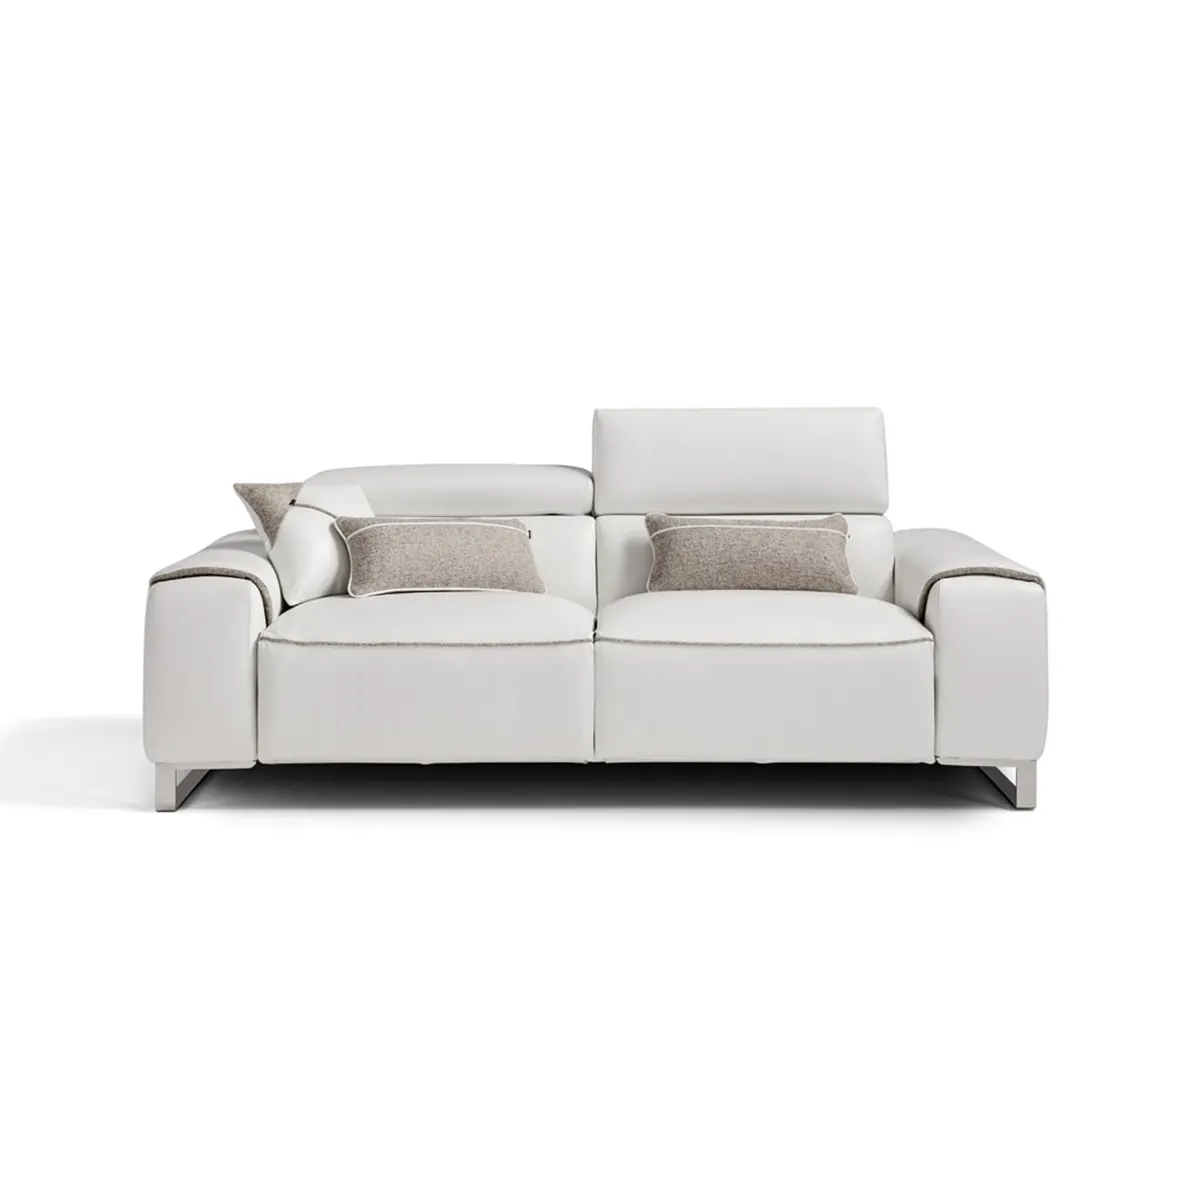 Divano letto In pelle Made In Italy di alta qualità pieghevole convertibile comodo materasso divano moderno divano